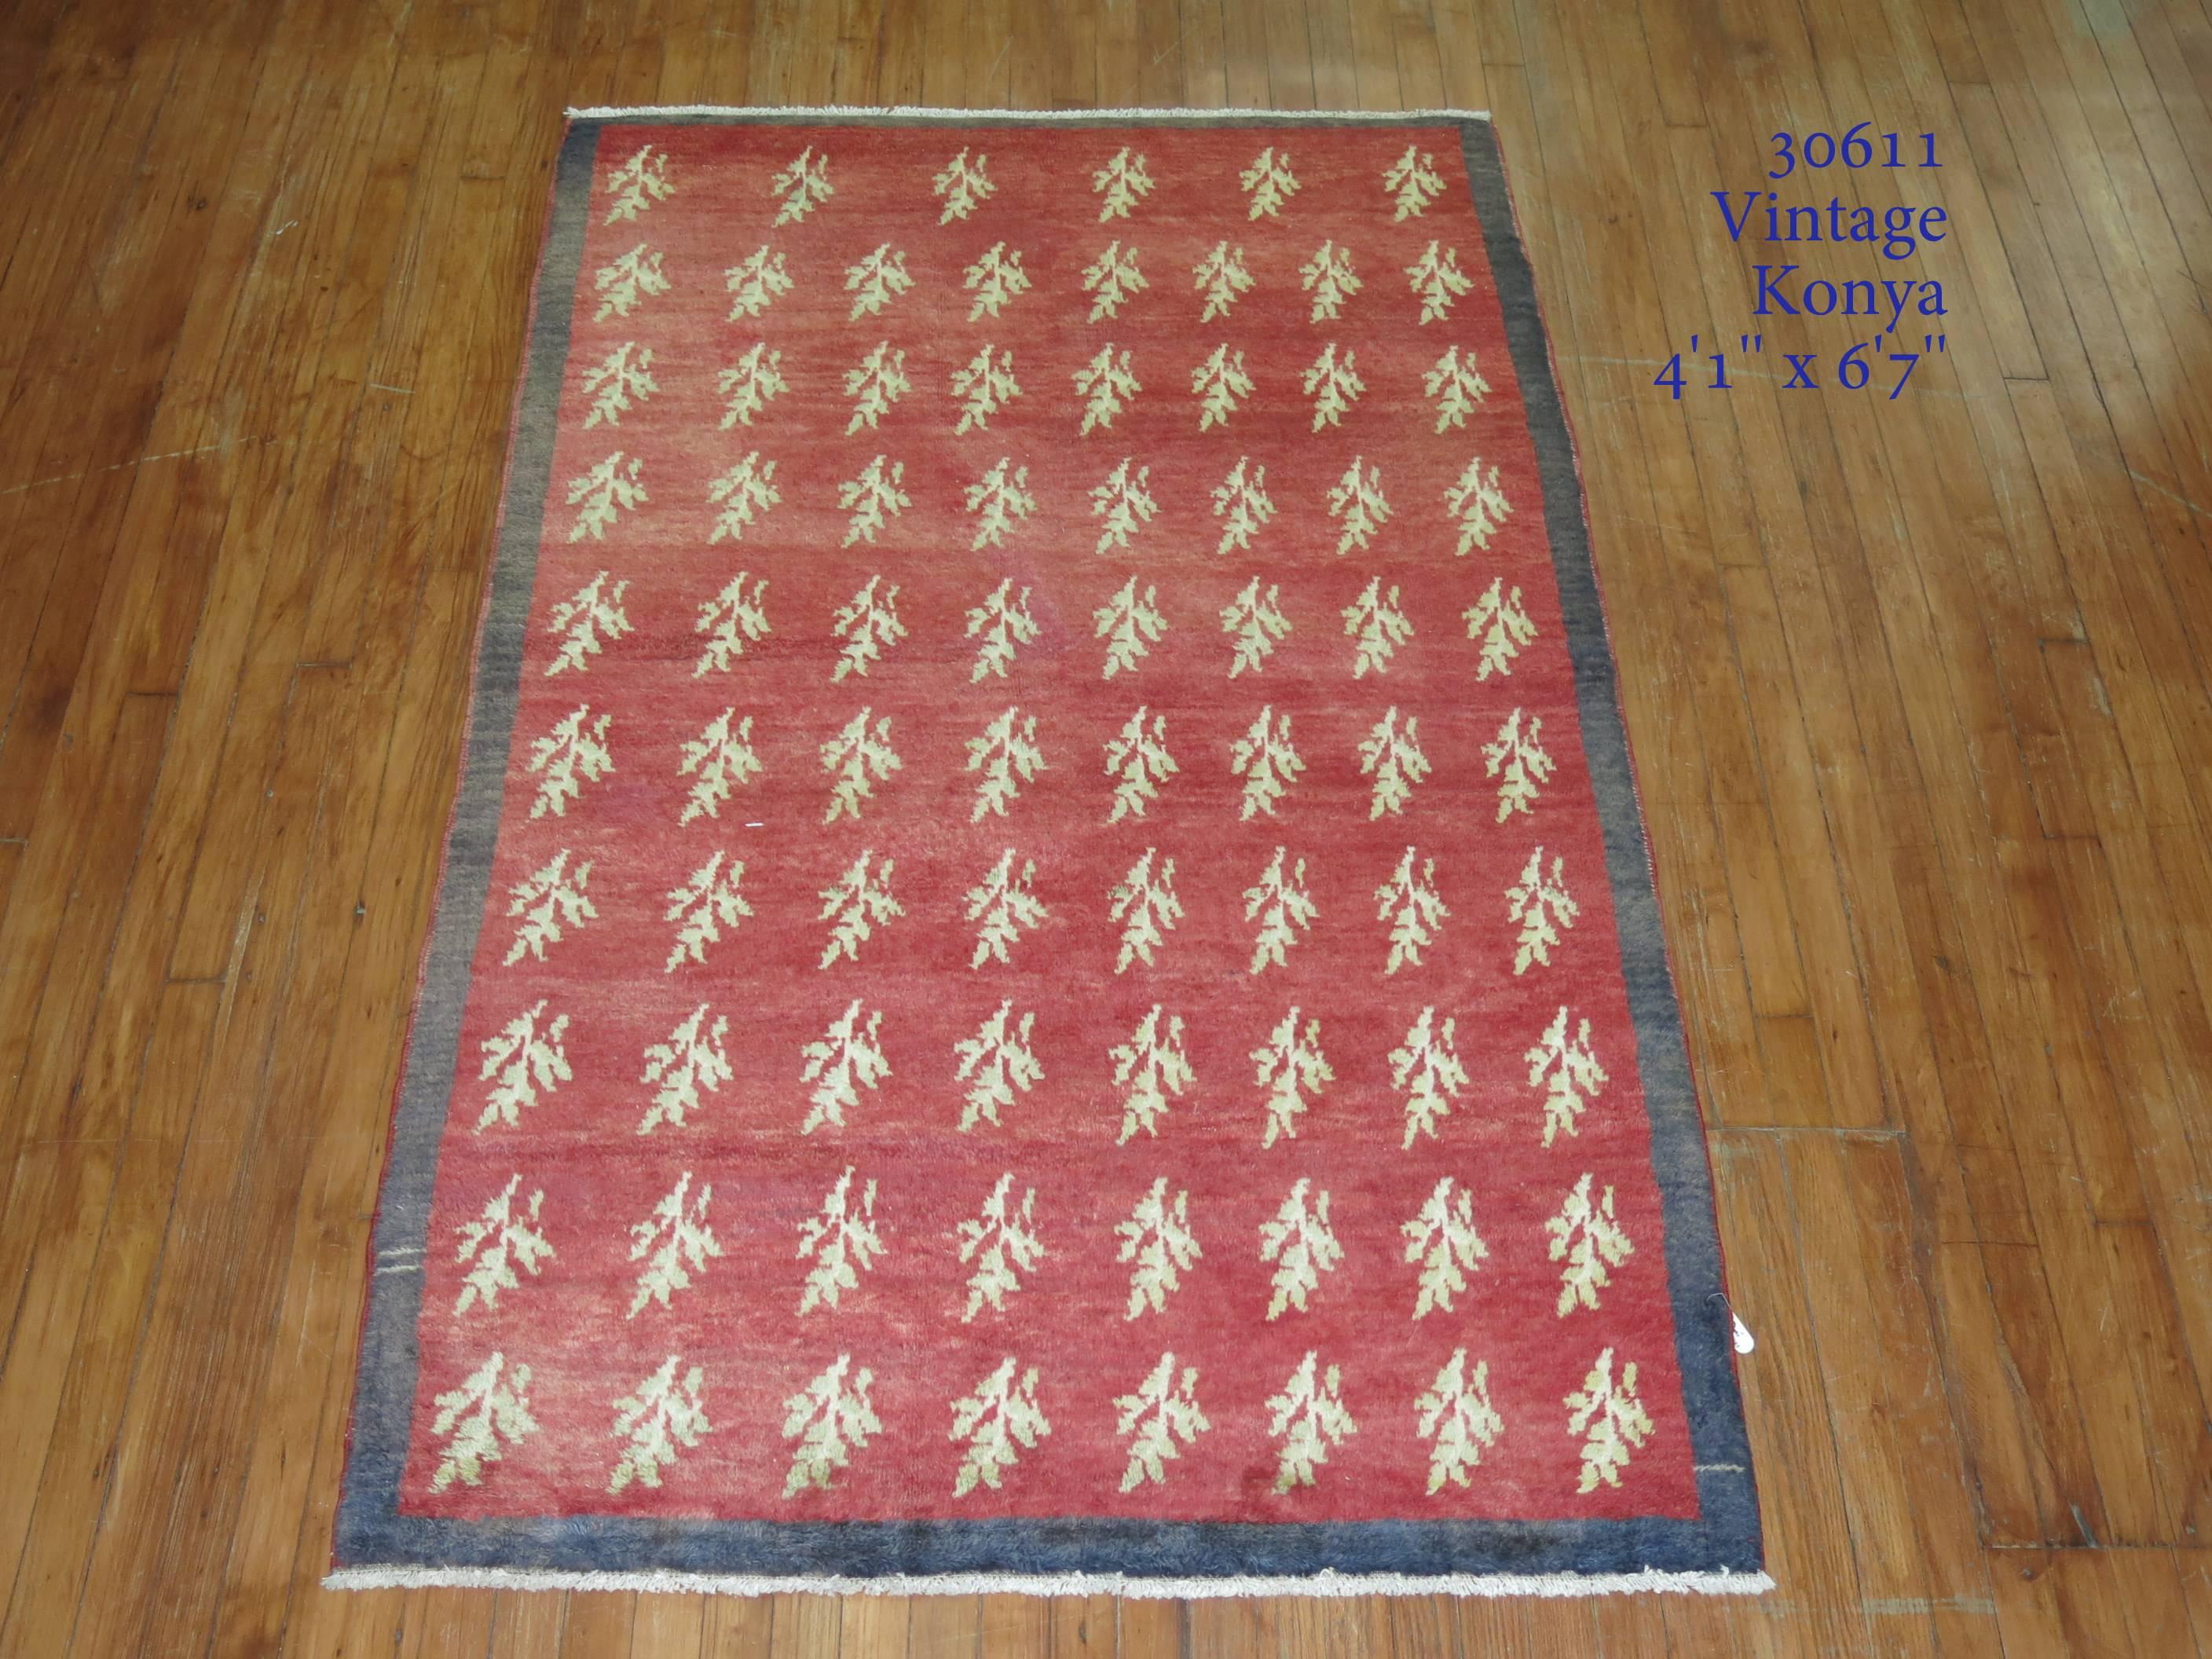 Türkischer Konya-Teppich aus der Jahrhundertmitte mit rotem Plüschflor und kohlefarbener Bordüre. Ein hübsches, sich ständig wiederholendes Motiv aus Zweigen und Blättern.

4'1'' x 6'7''